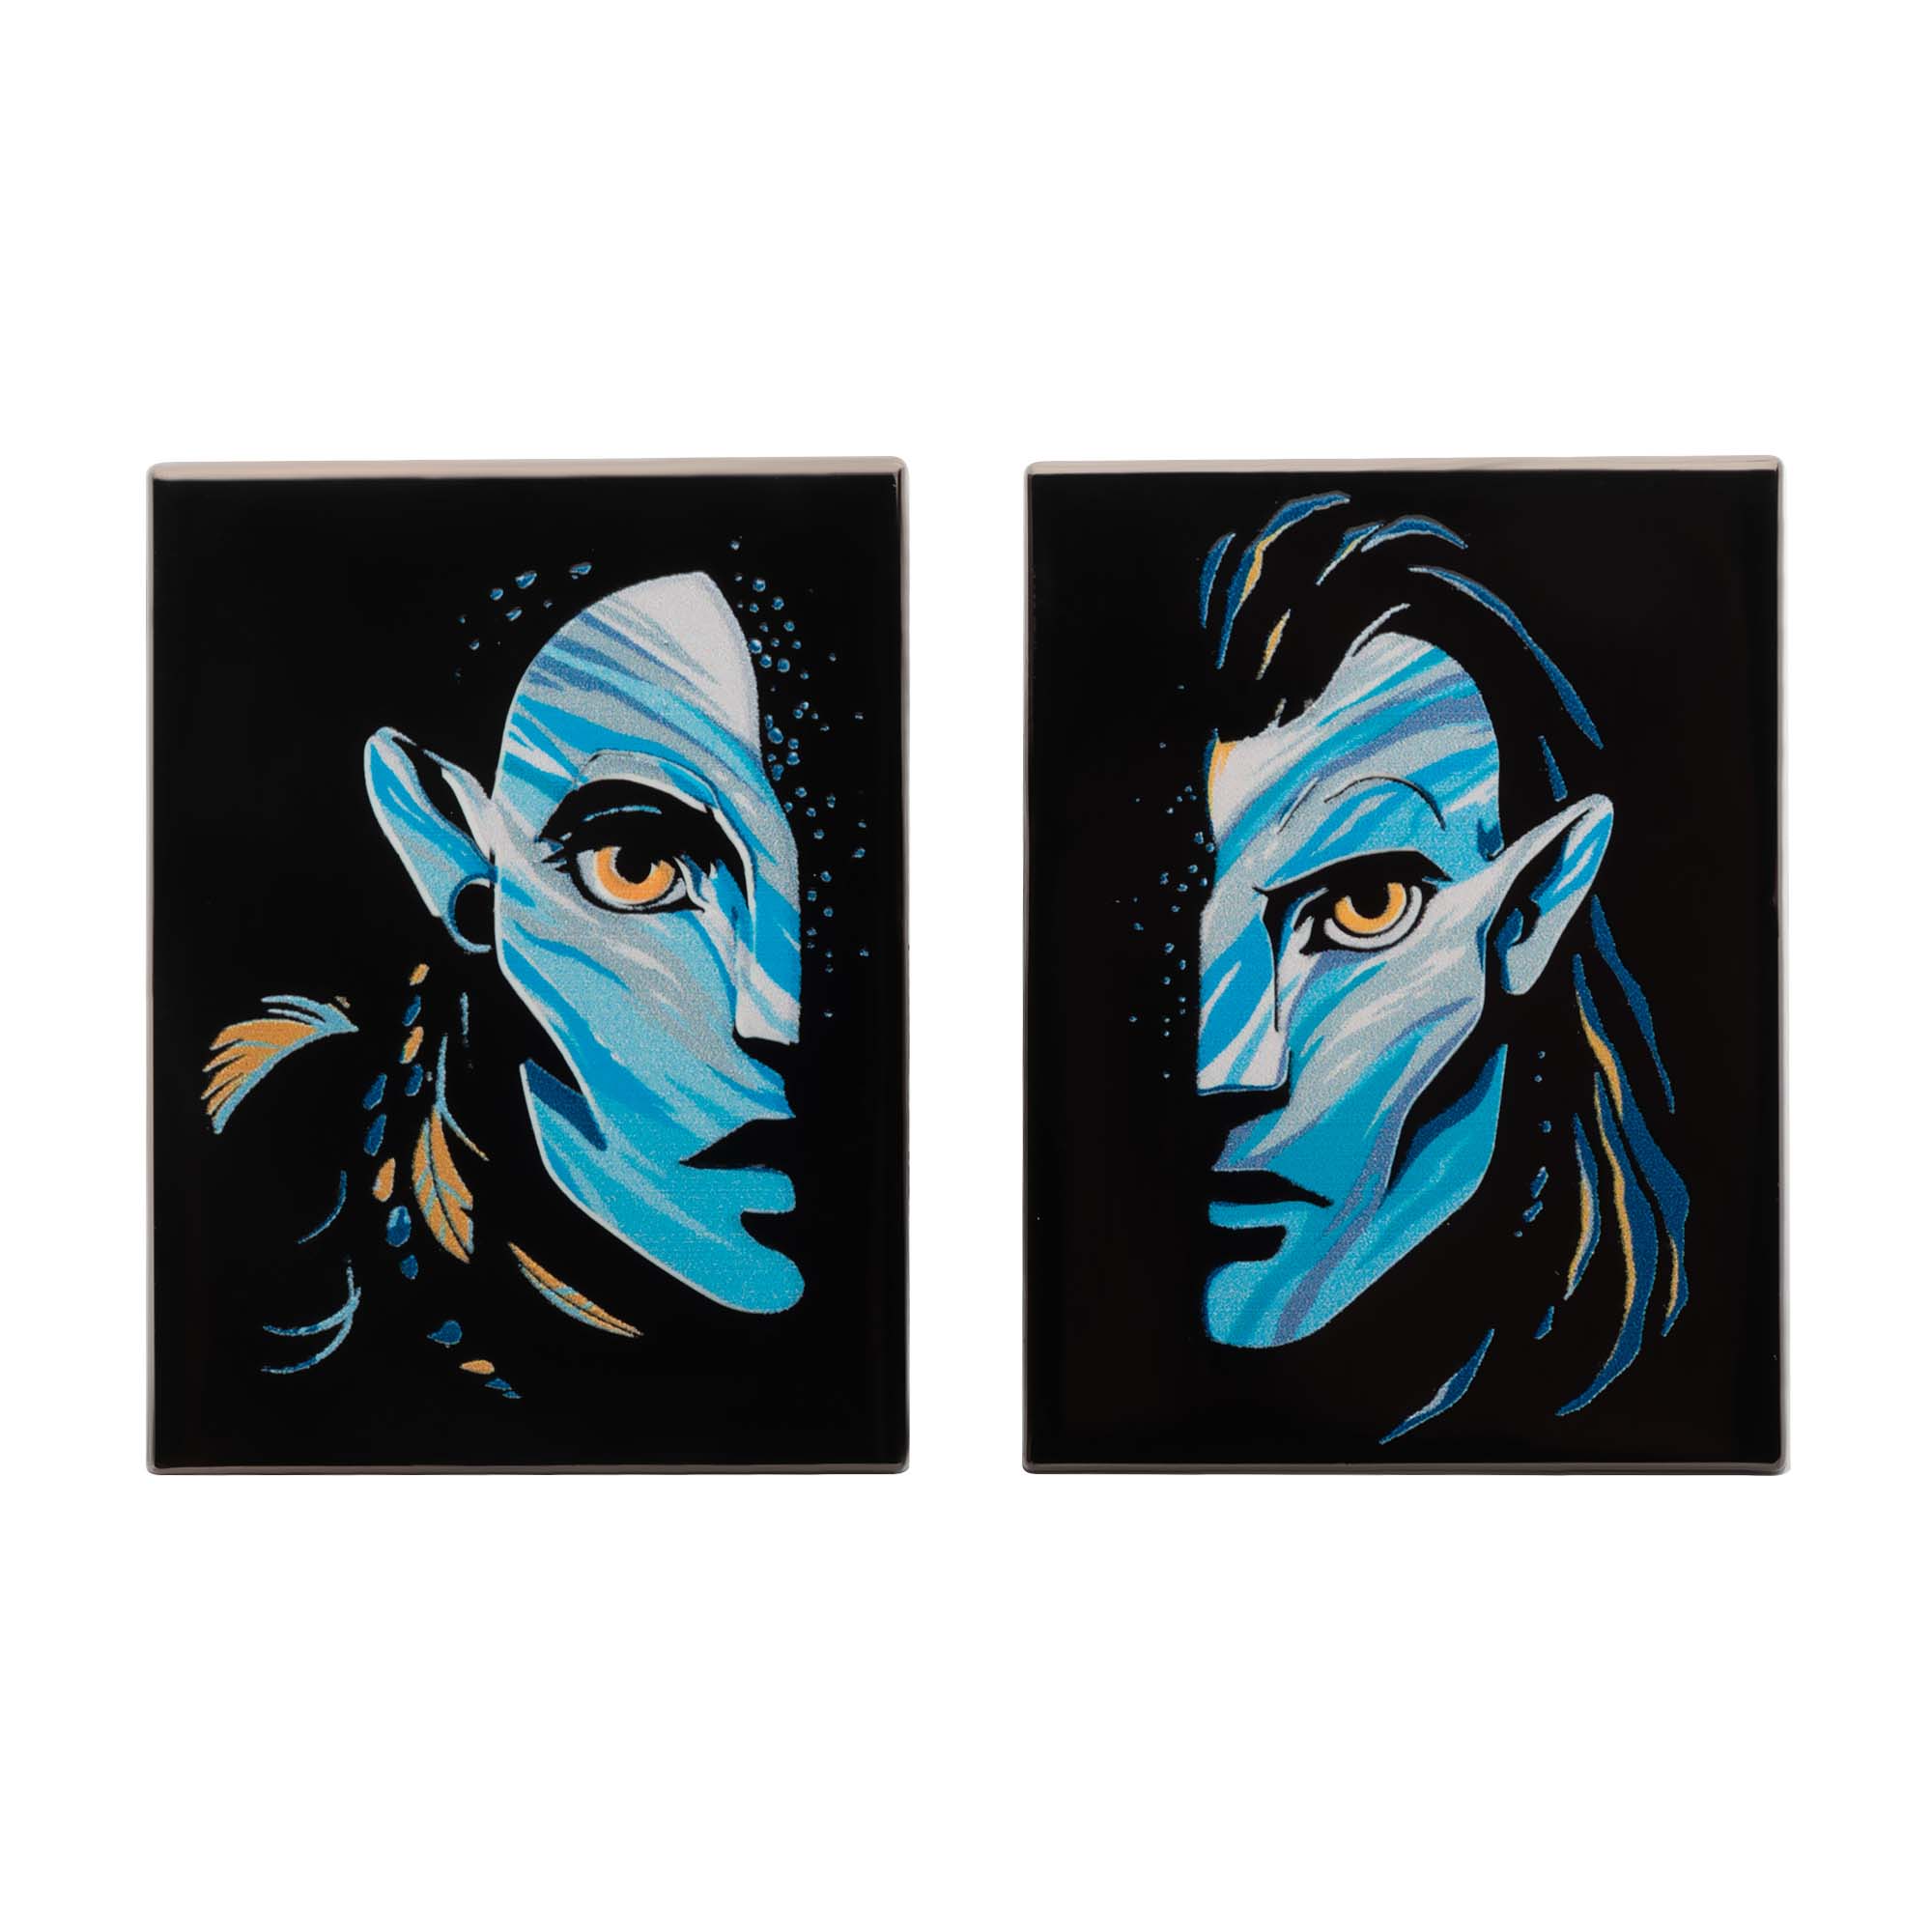 Avatar 2 Neytiri & Jake Sully Pin Set